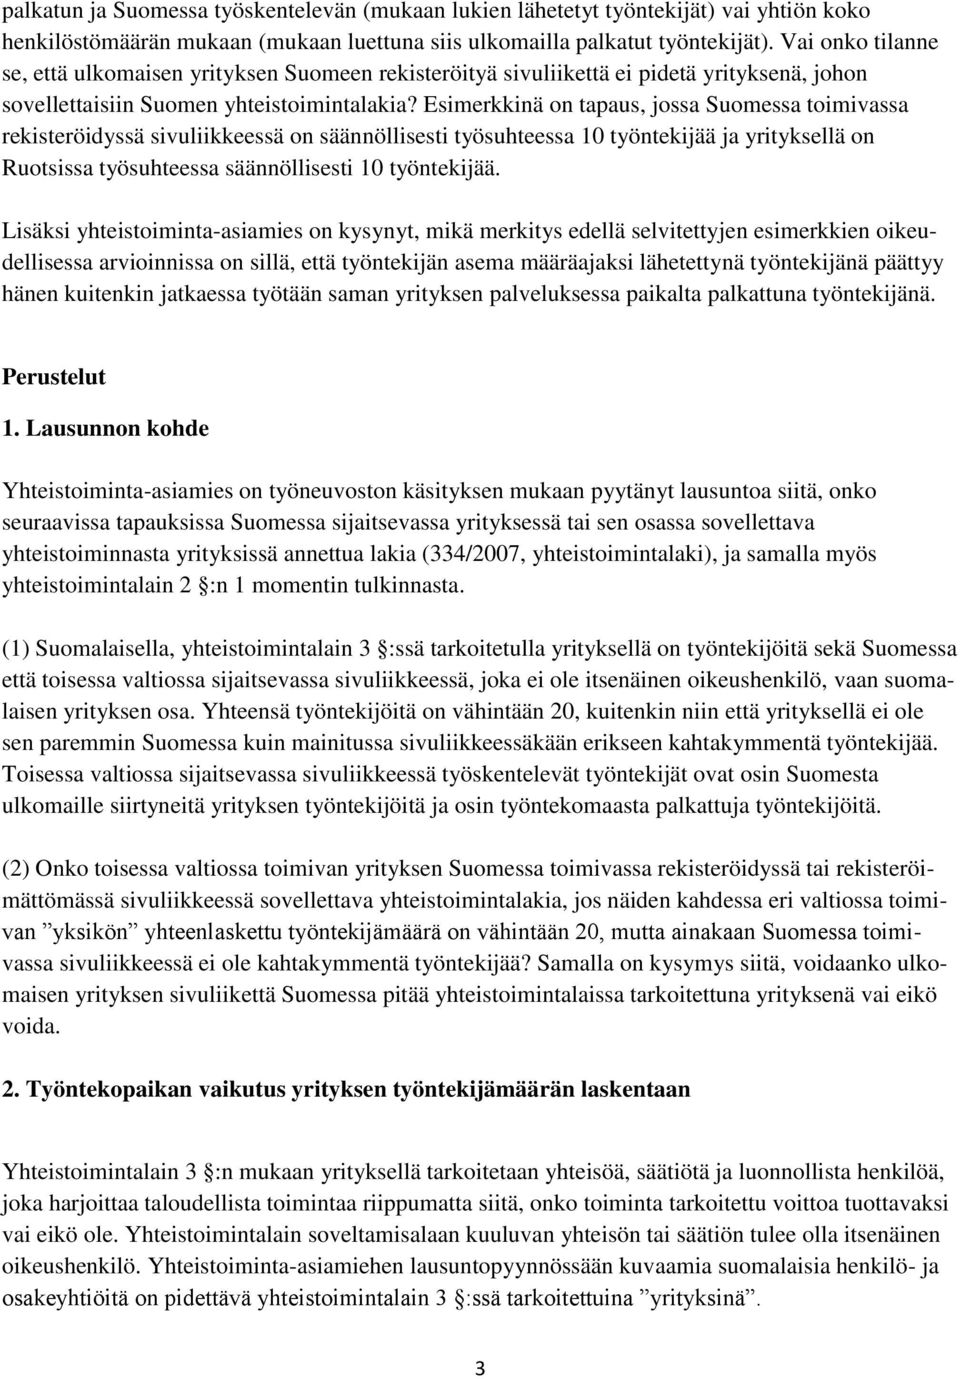 Esimerkkinä on tapaus, jossa Suomessa toimivassa rekisteröidyssä sivuliikkeessä on säännöllisesti työsuhteessa 10 työntekijää ja yrityksellä on Ruotsissa työsuhteessa säännöllisesti 10 työntekijää.